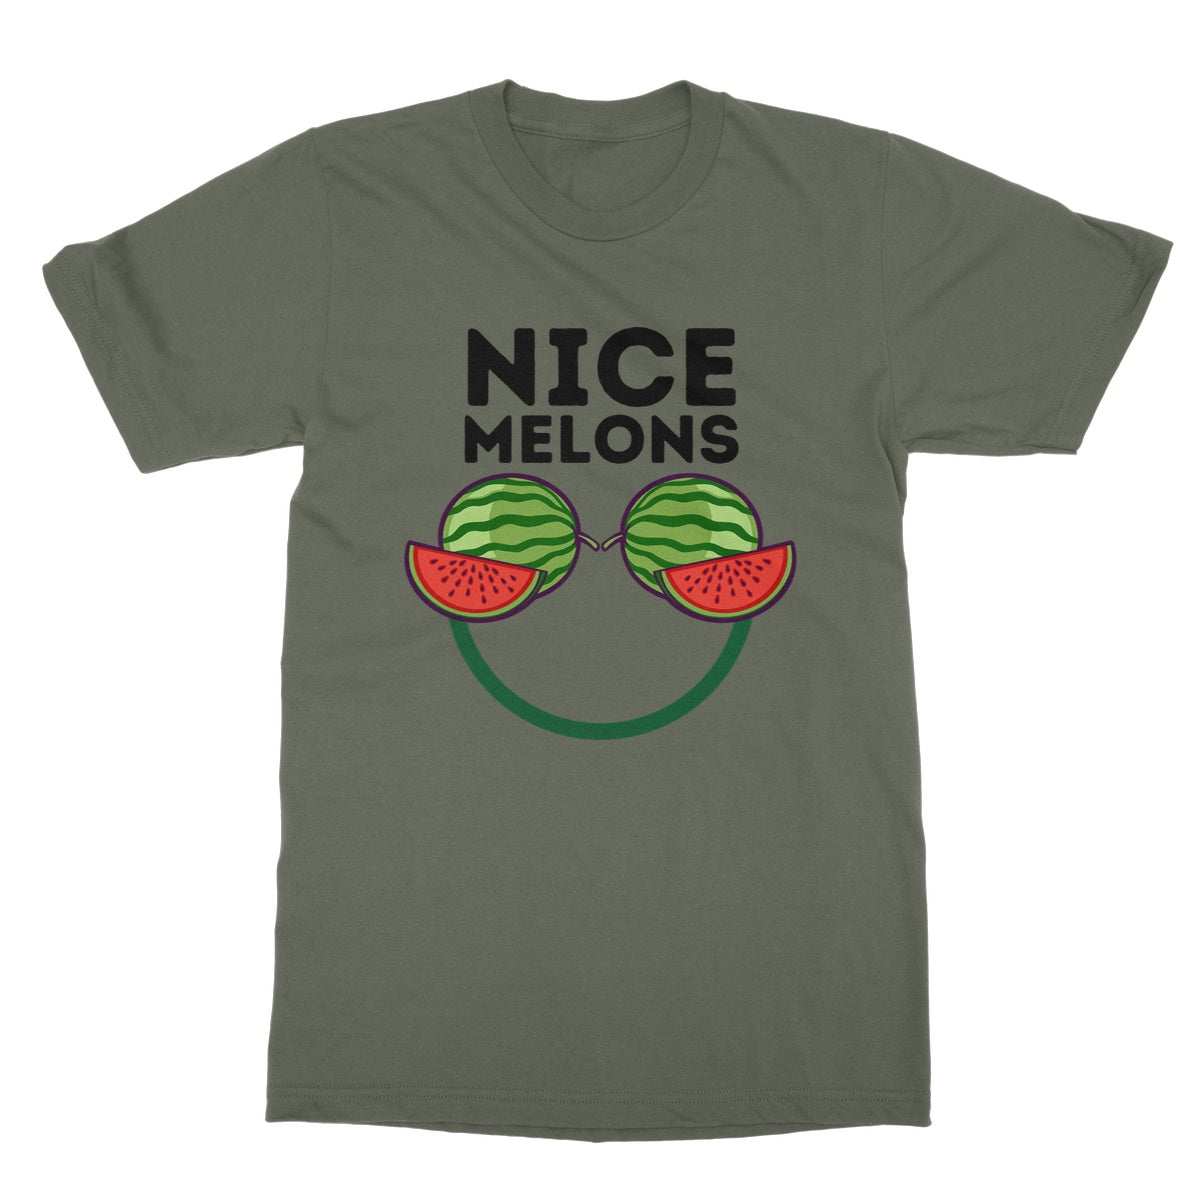 nice melons t shirt green